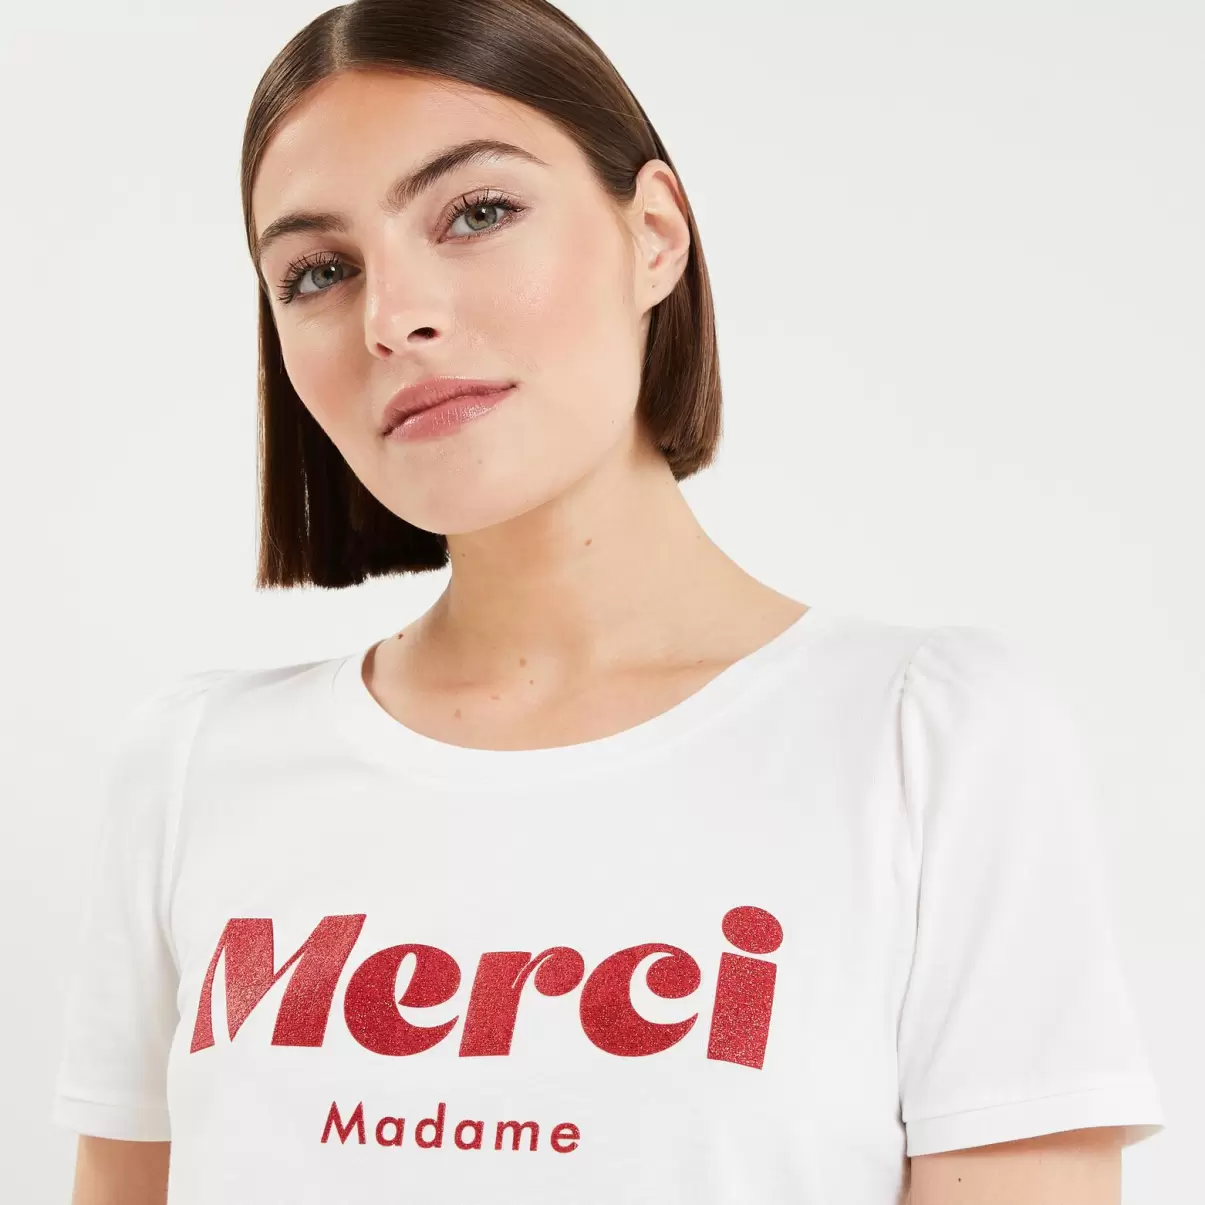 Tshirt Message Femme Femme T-Shirts & Tops Prix Promotionnel Blanc Casse Grain De Malic - 3